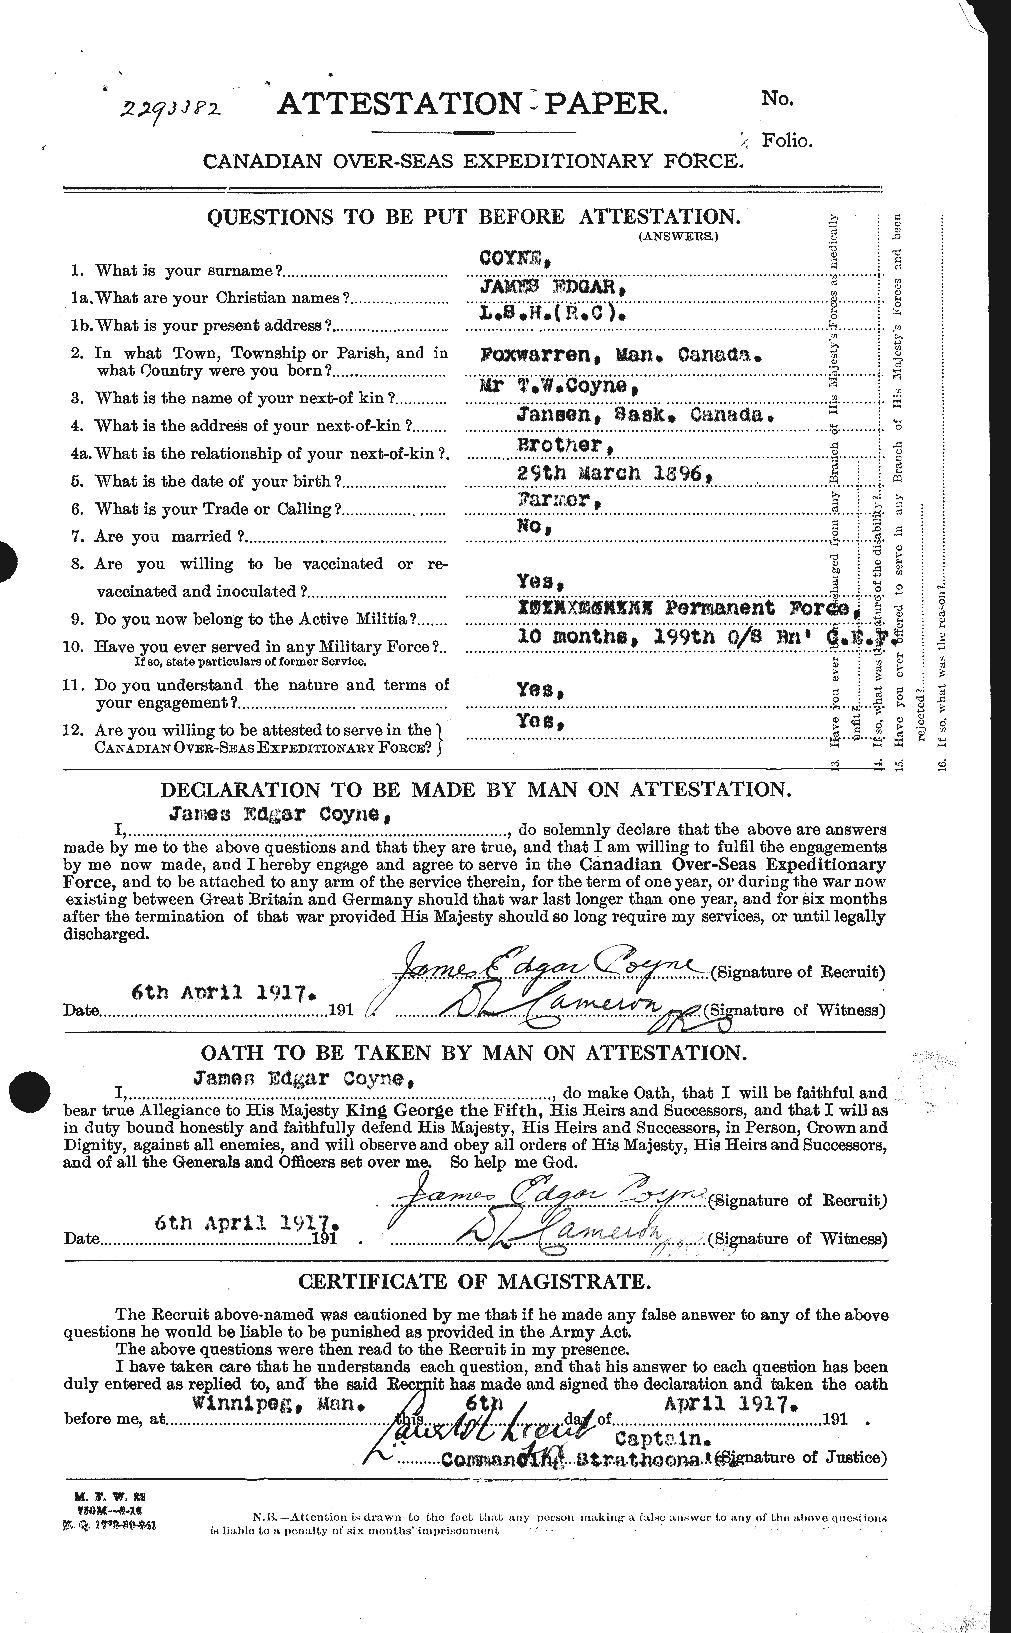 Dossiers du Personnel de la Première Guerre mondiale - CEC 062322a